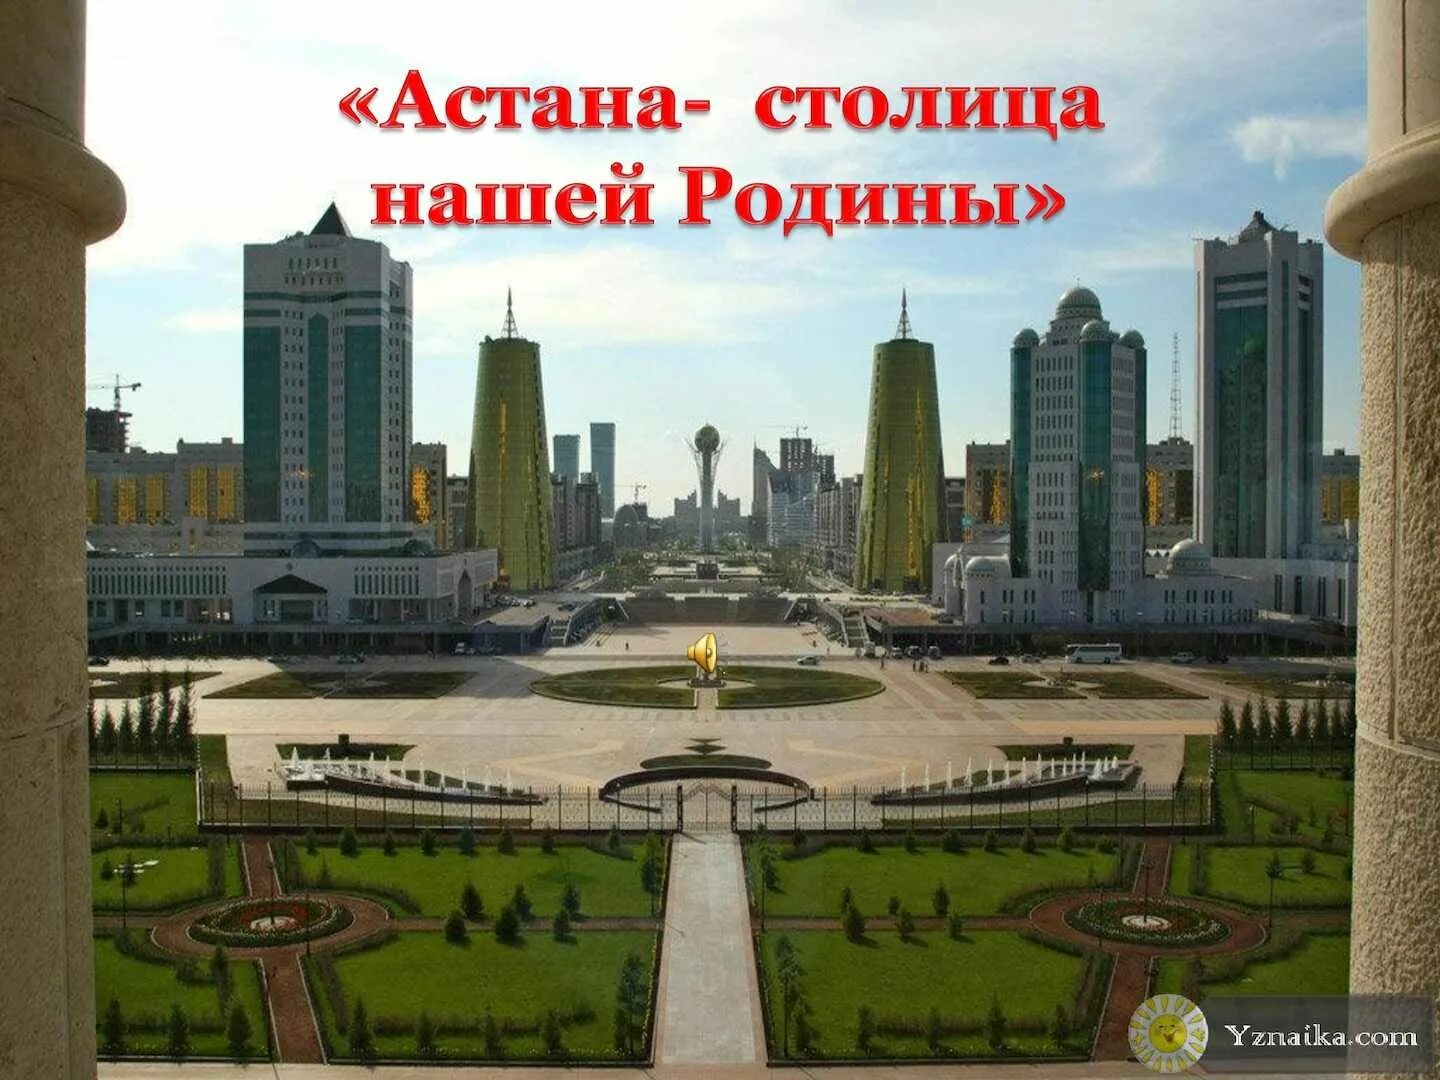 Столица Нурсултан столица. Столица Казахстана Нурсултан 2020.